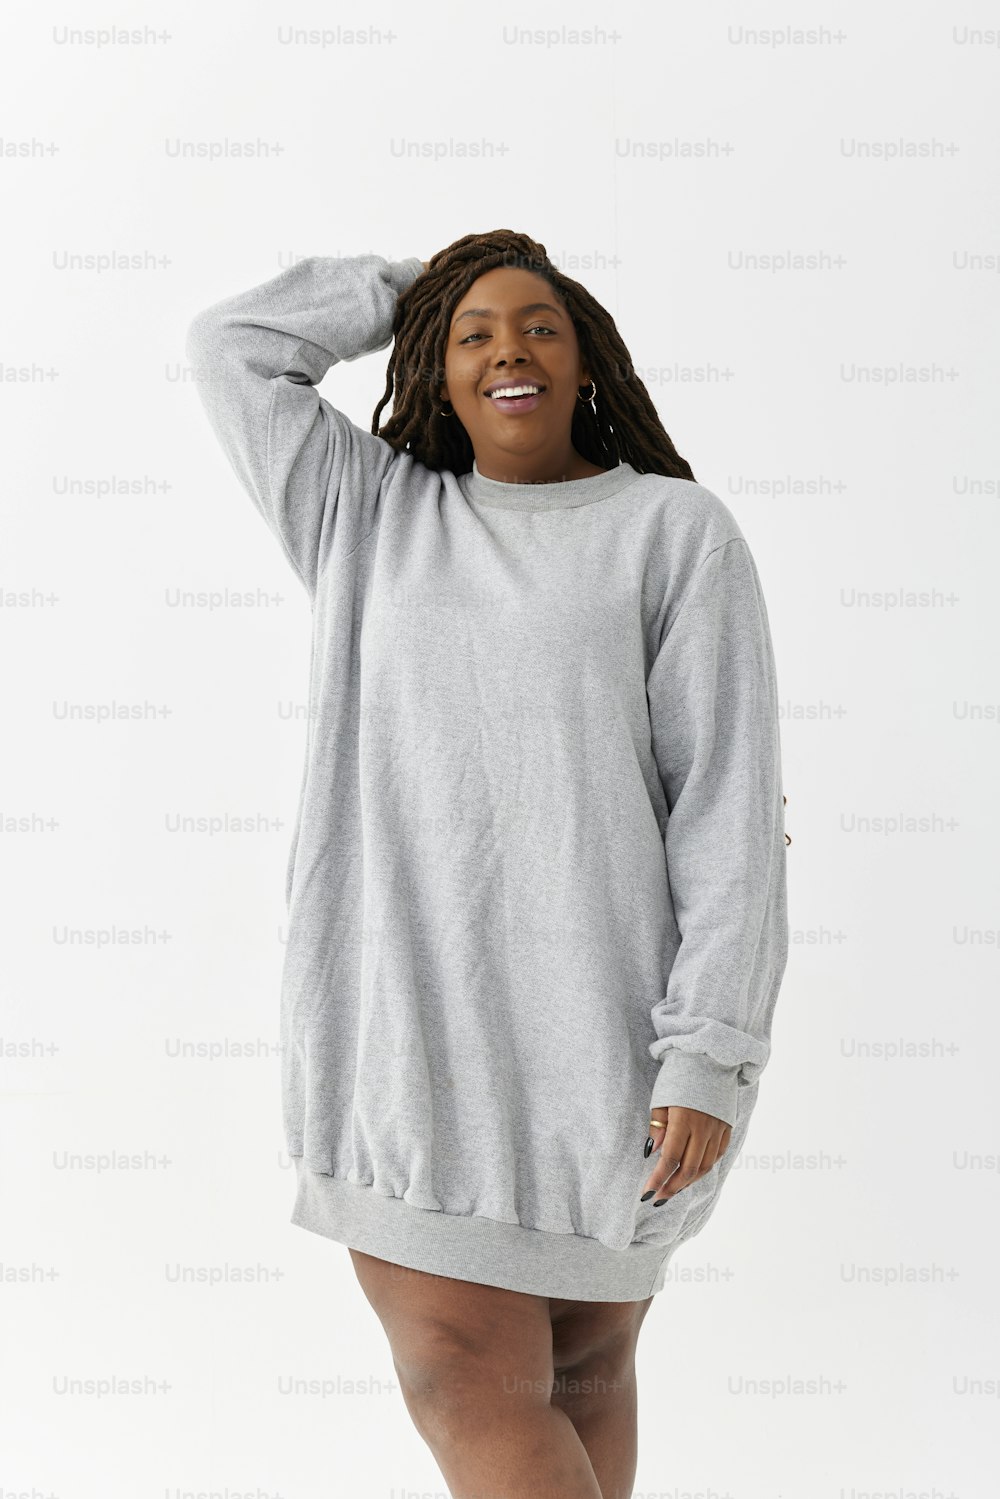 a woman in a grey sweatshirt dress